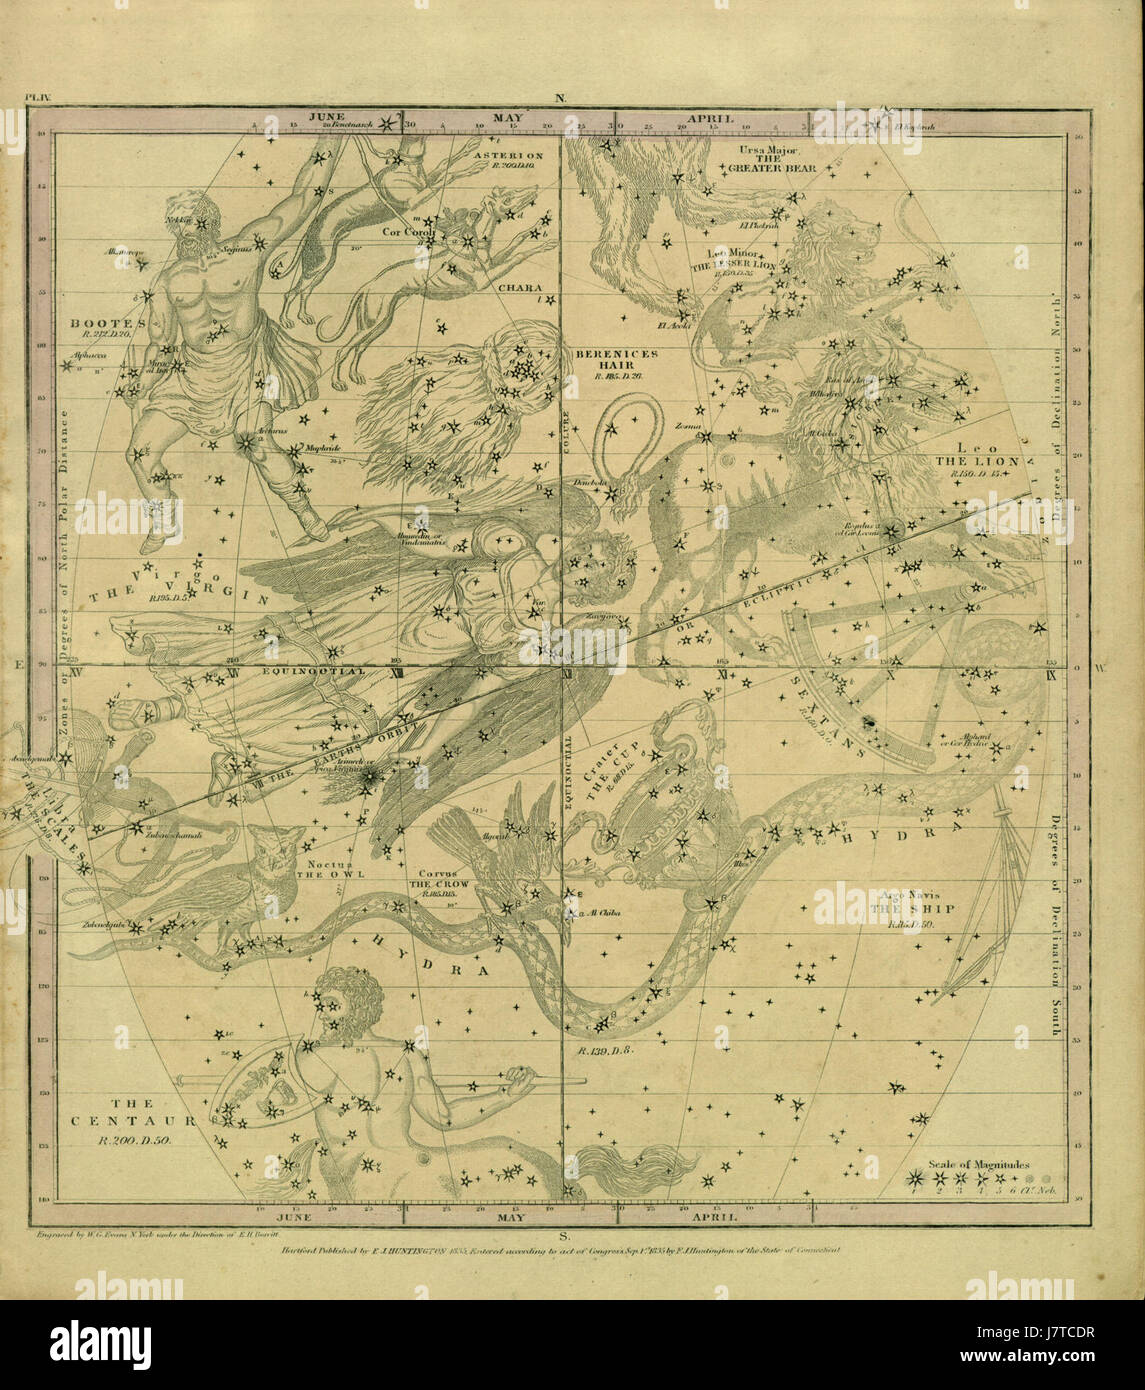 Atlas, entworfen, um die Geographie der Himmel pl. 4 zu veranschaulichen Stockfoto